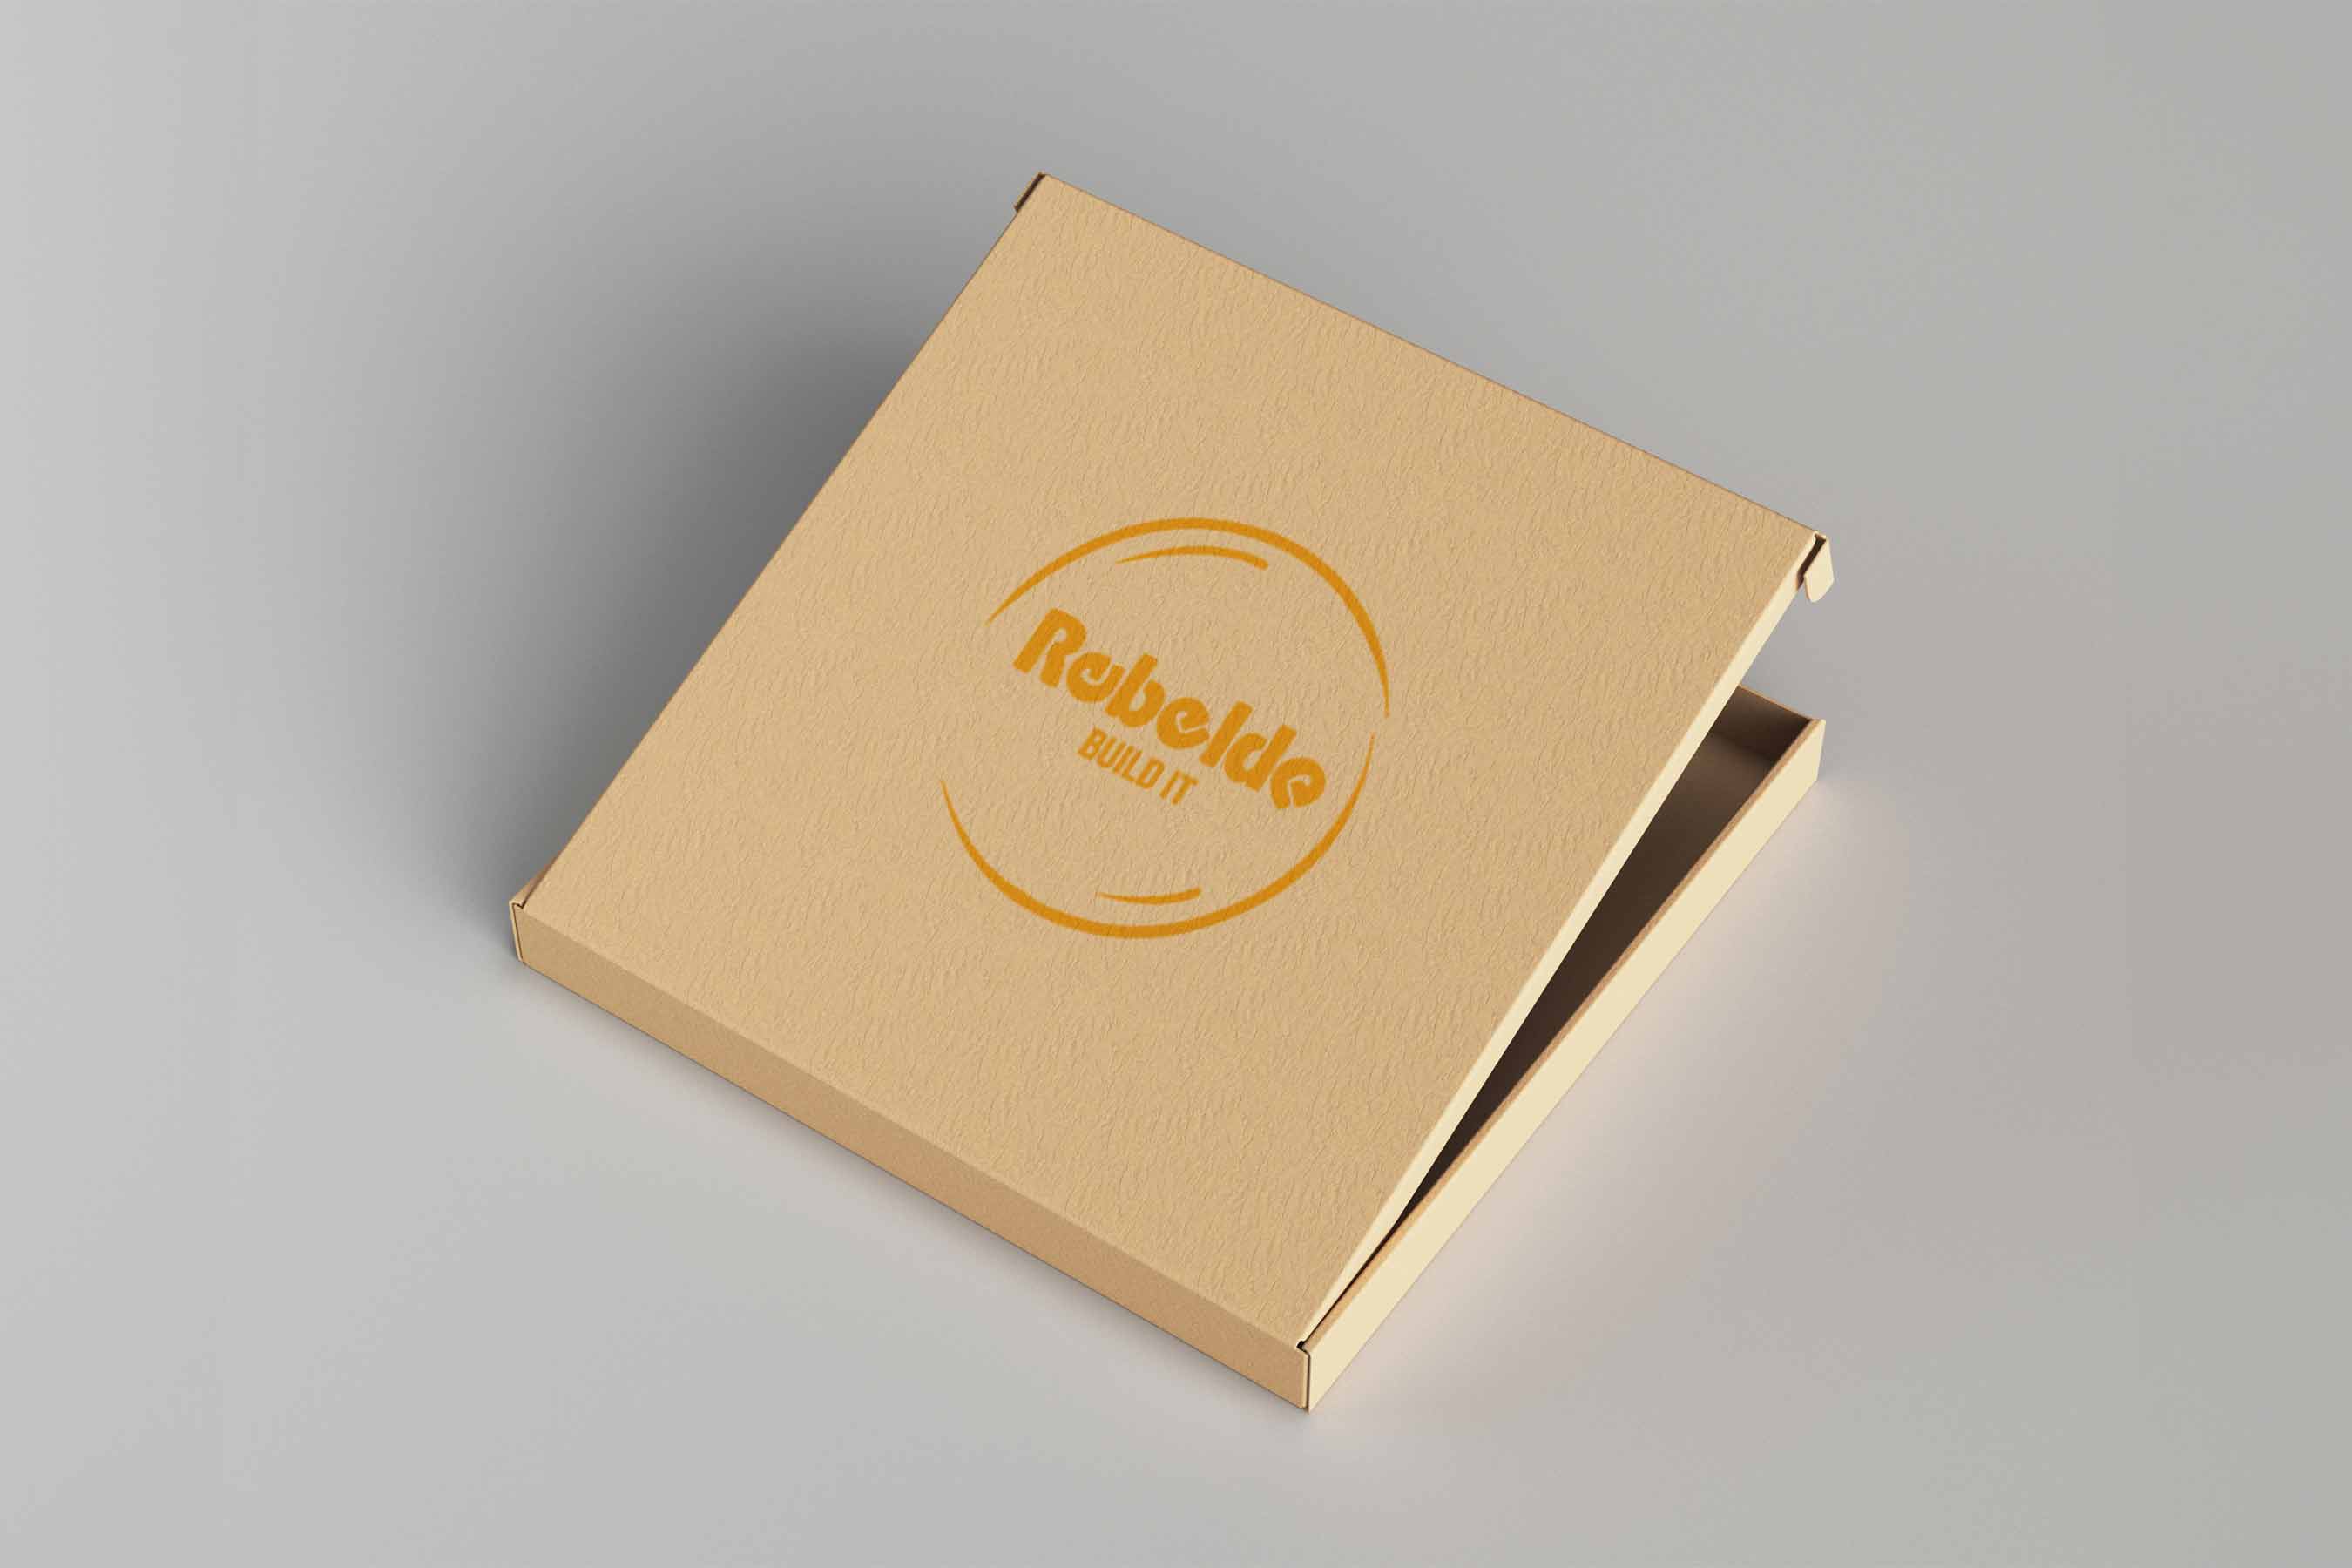 Bedruckte Geschenkboxen aus Pappe – Rebelde Build Es